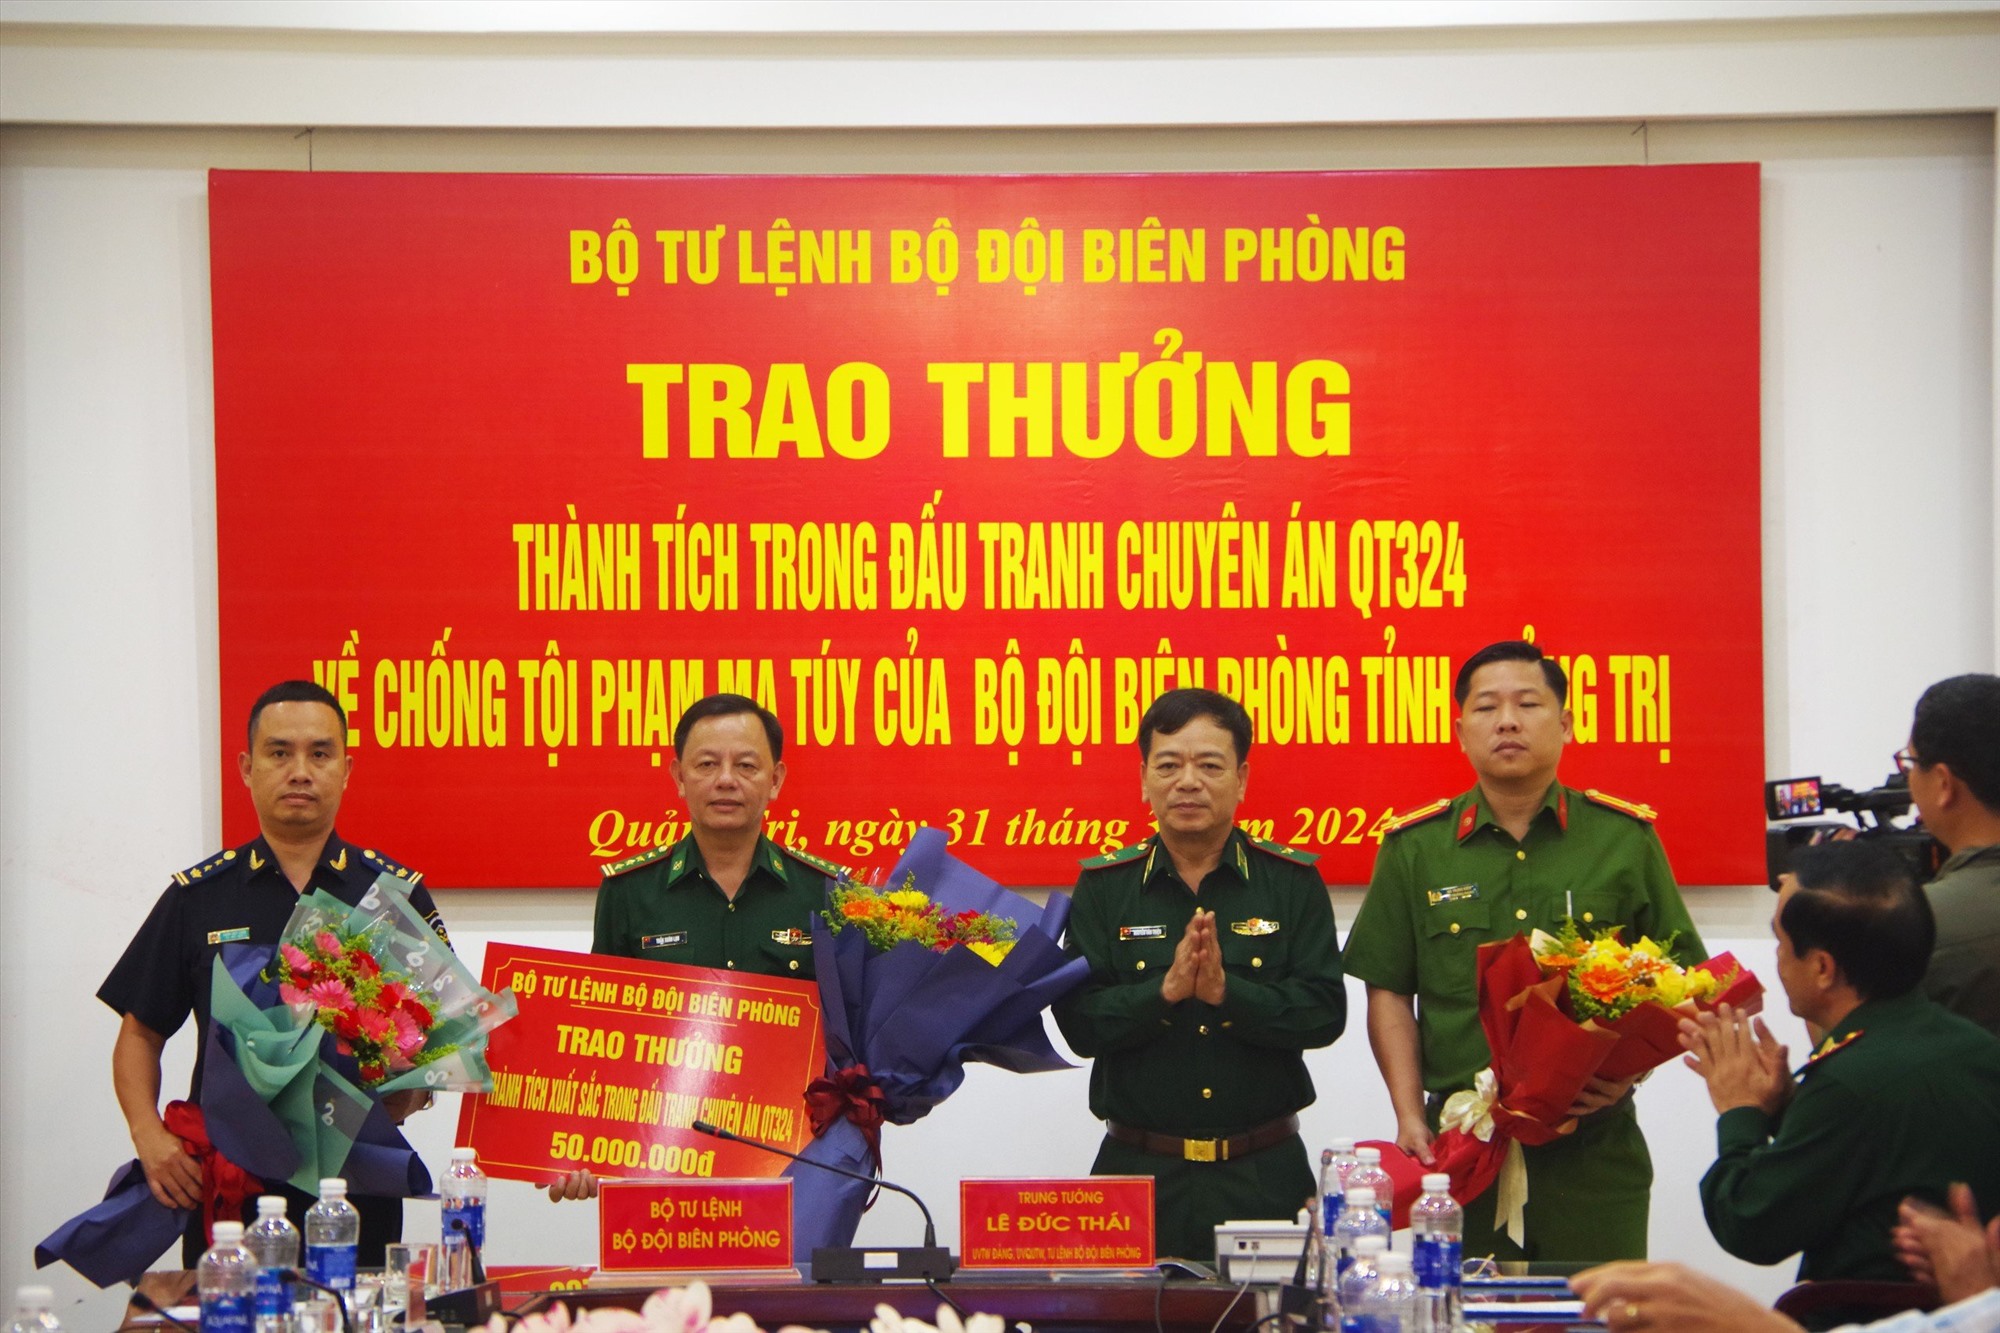 Thiếu tướng Nguyễn Văn Thiện, Phó Tư lệnh BĐBP  trao thưởng cho các lực lượng tham gia phá án.